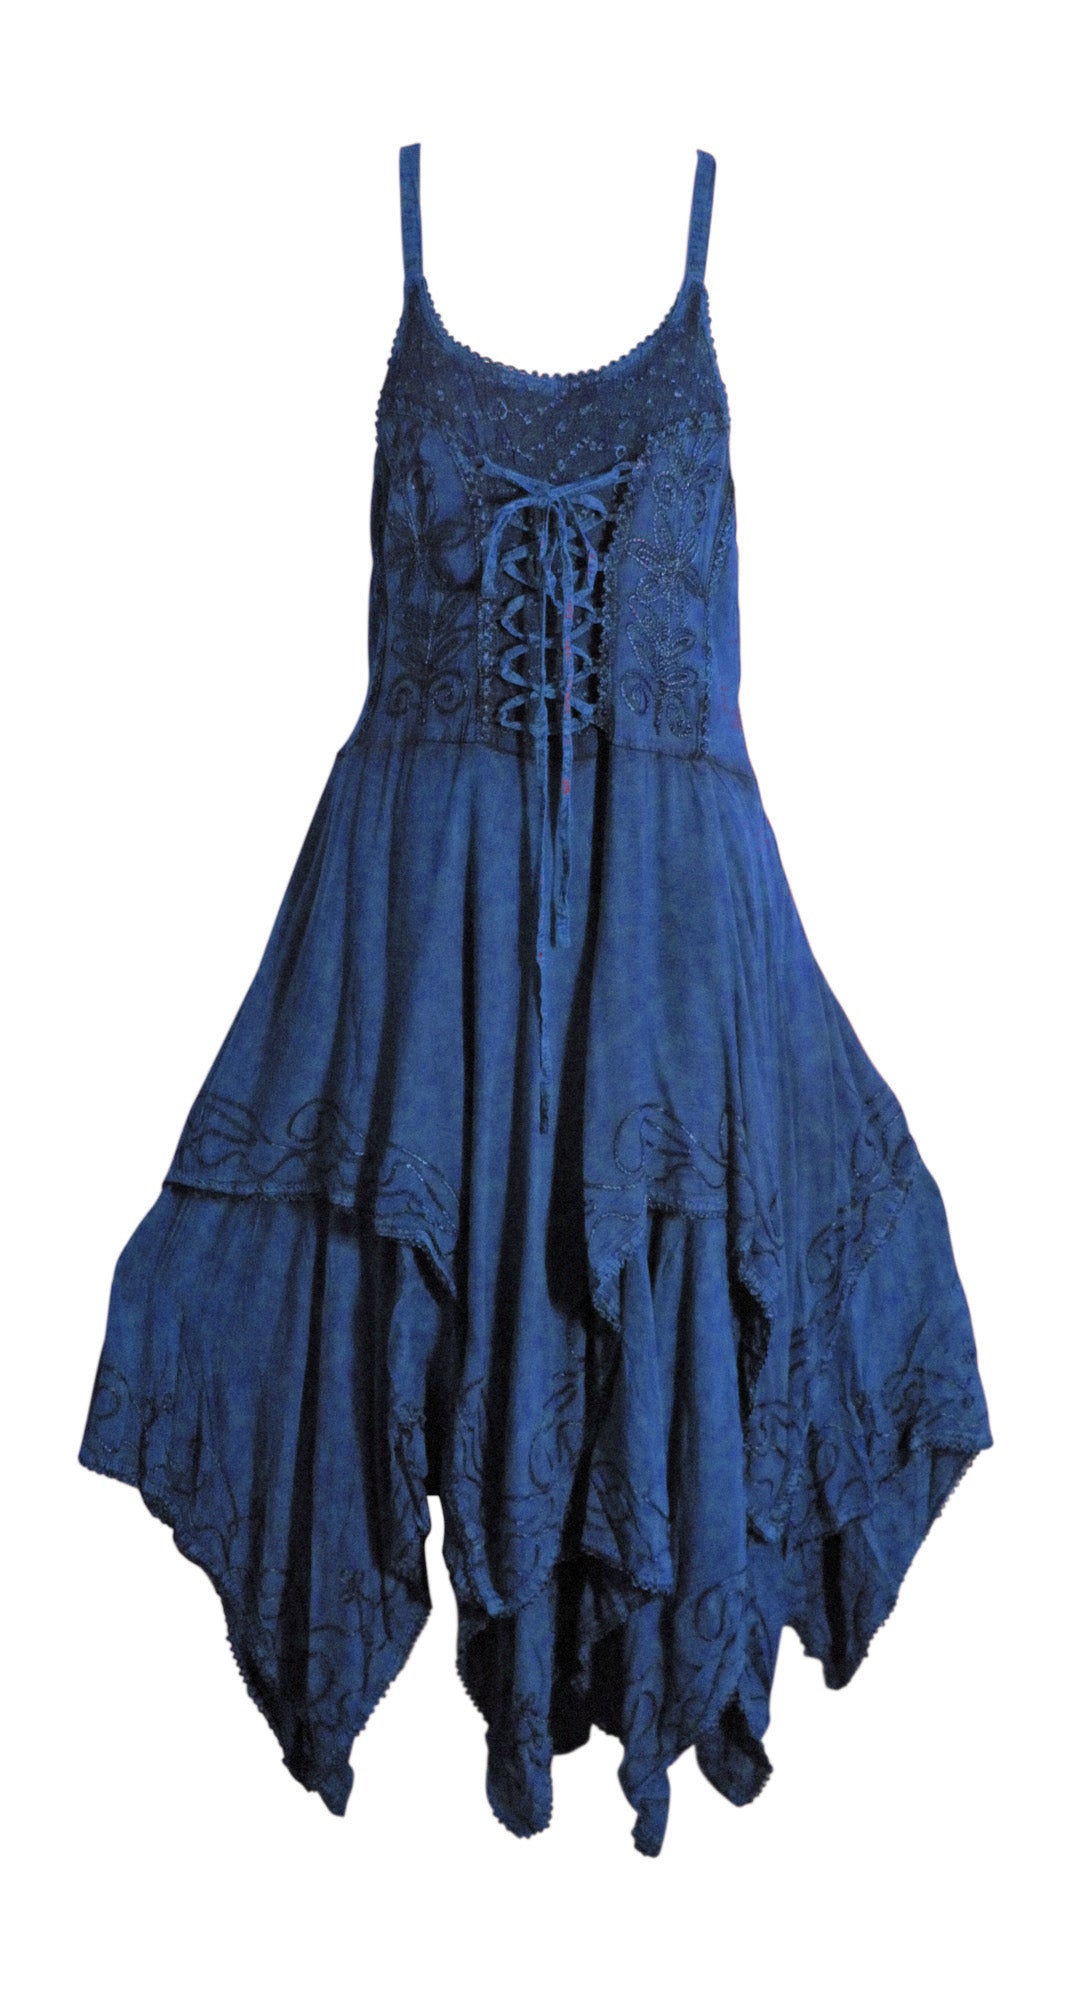 Missy Bohemian Renaissance Spaghetti Strap Layered Embroidered Long Dress - Ambali Fashion Dresses 